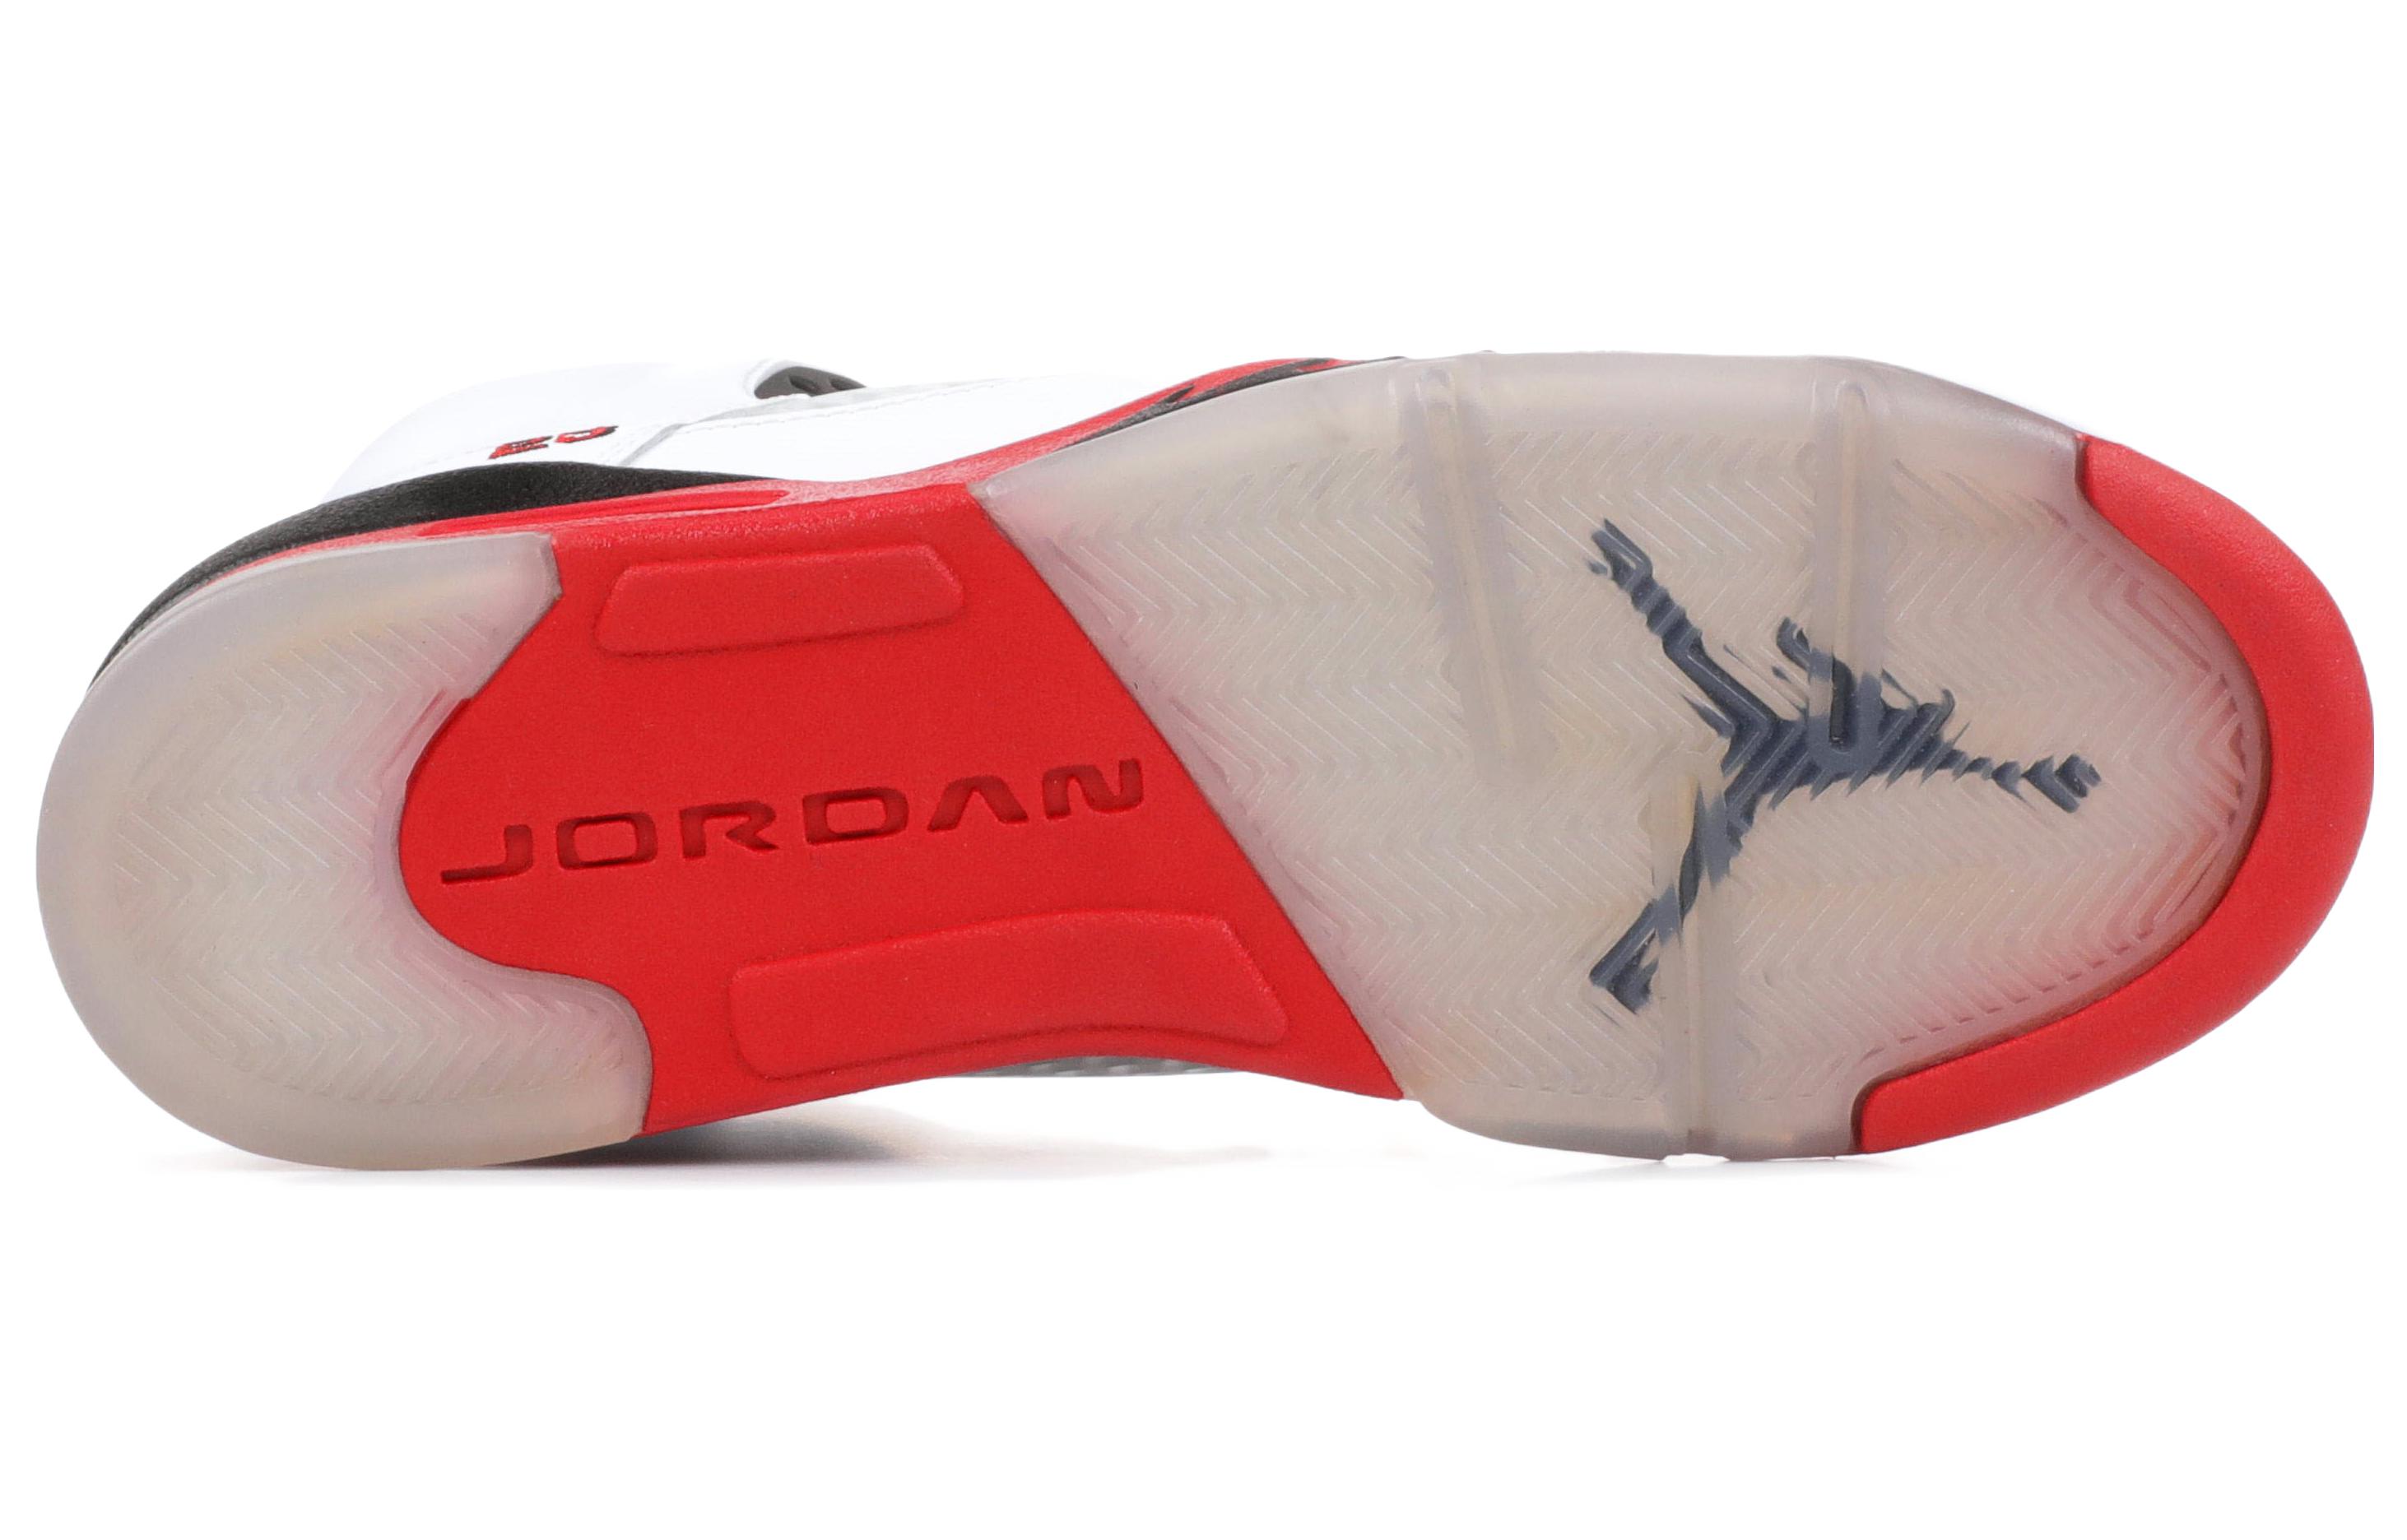 Jordan Air Jordan 5 Retro Fire Red Black Tongue GS 2013